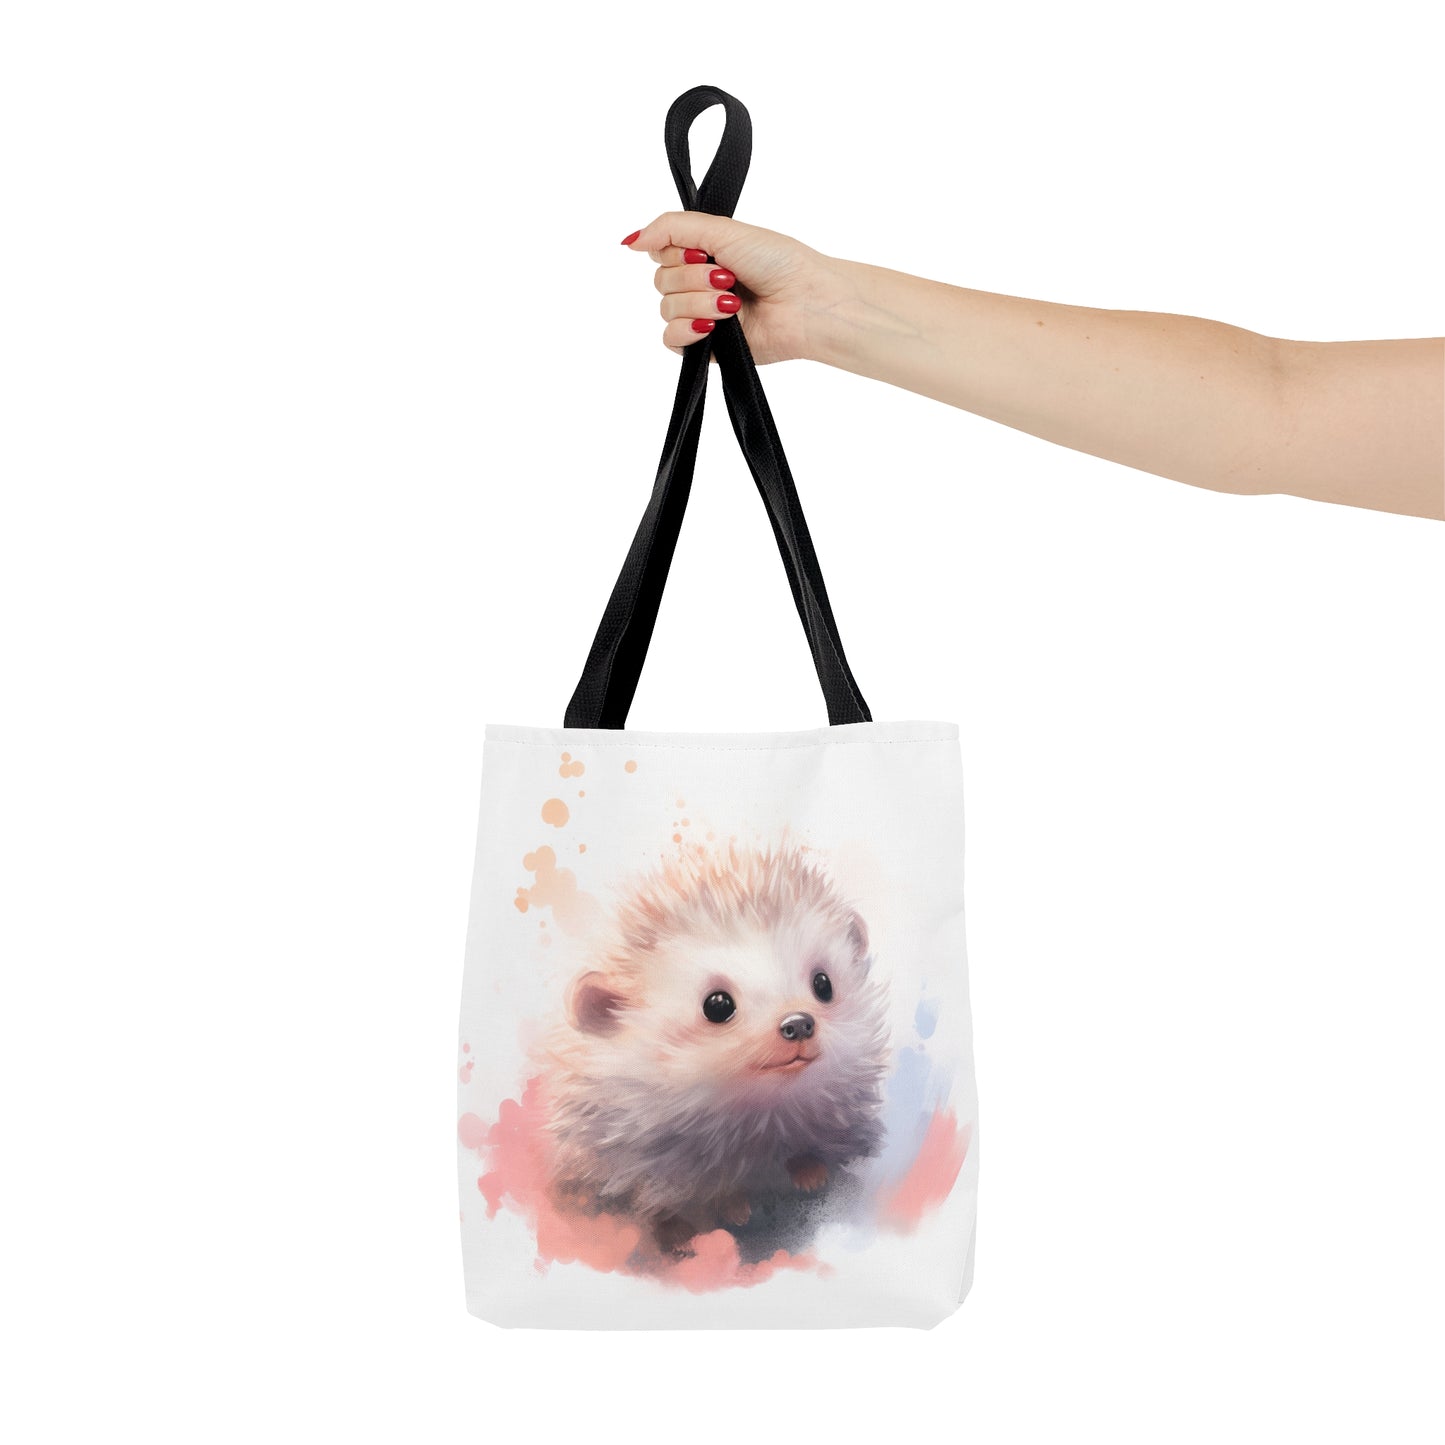 Little Hedgehog Tote Bag